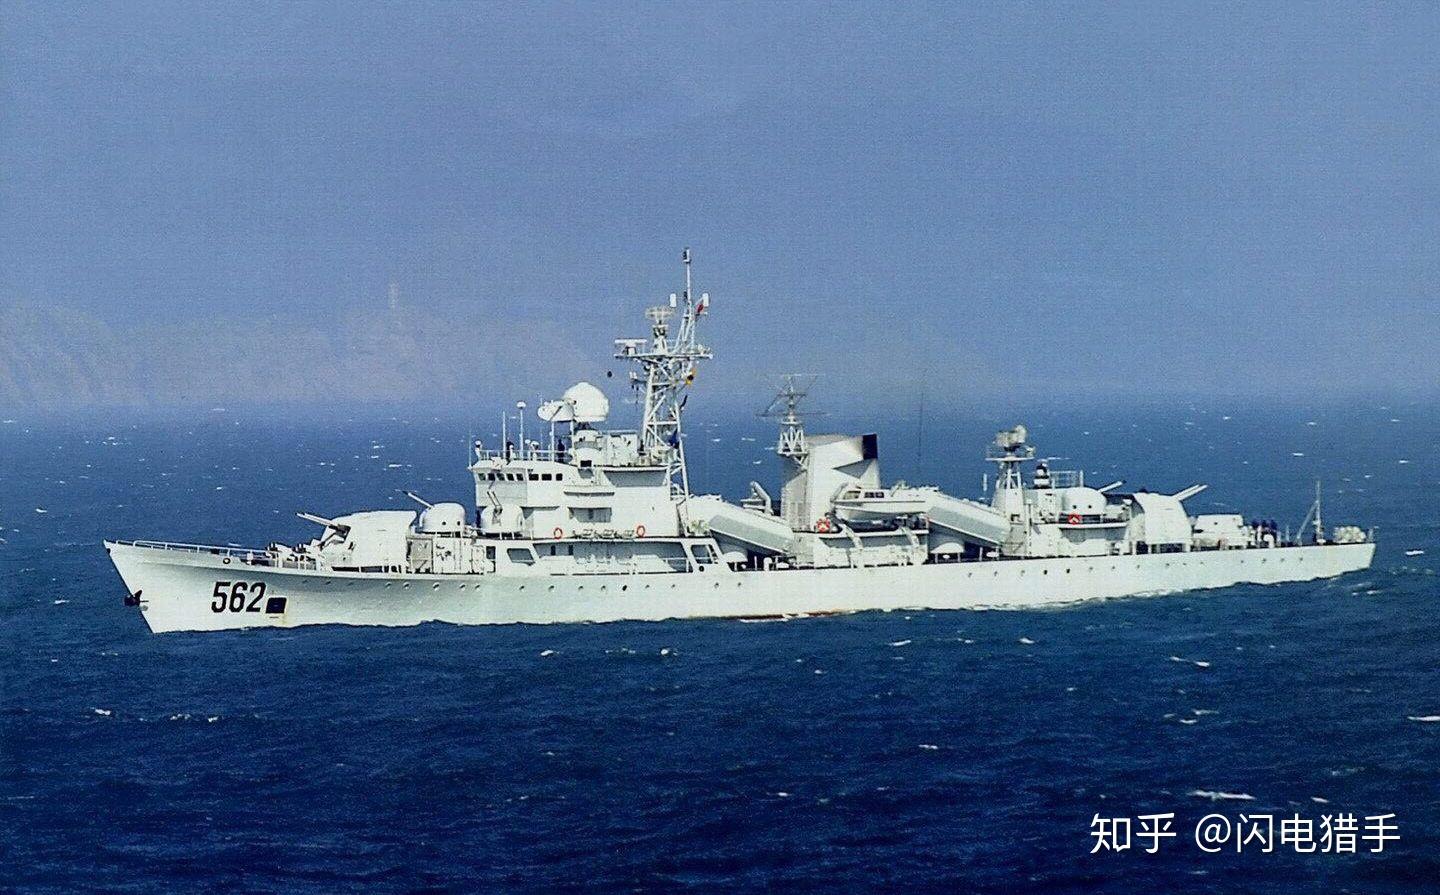 旧瓶新酒中国053h1g型导弹护卫舰